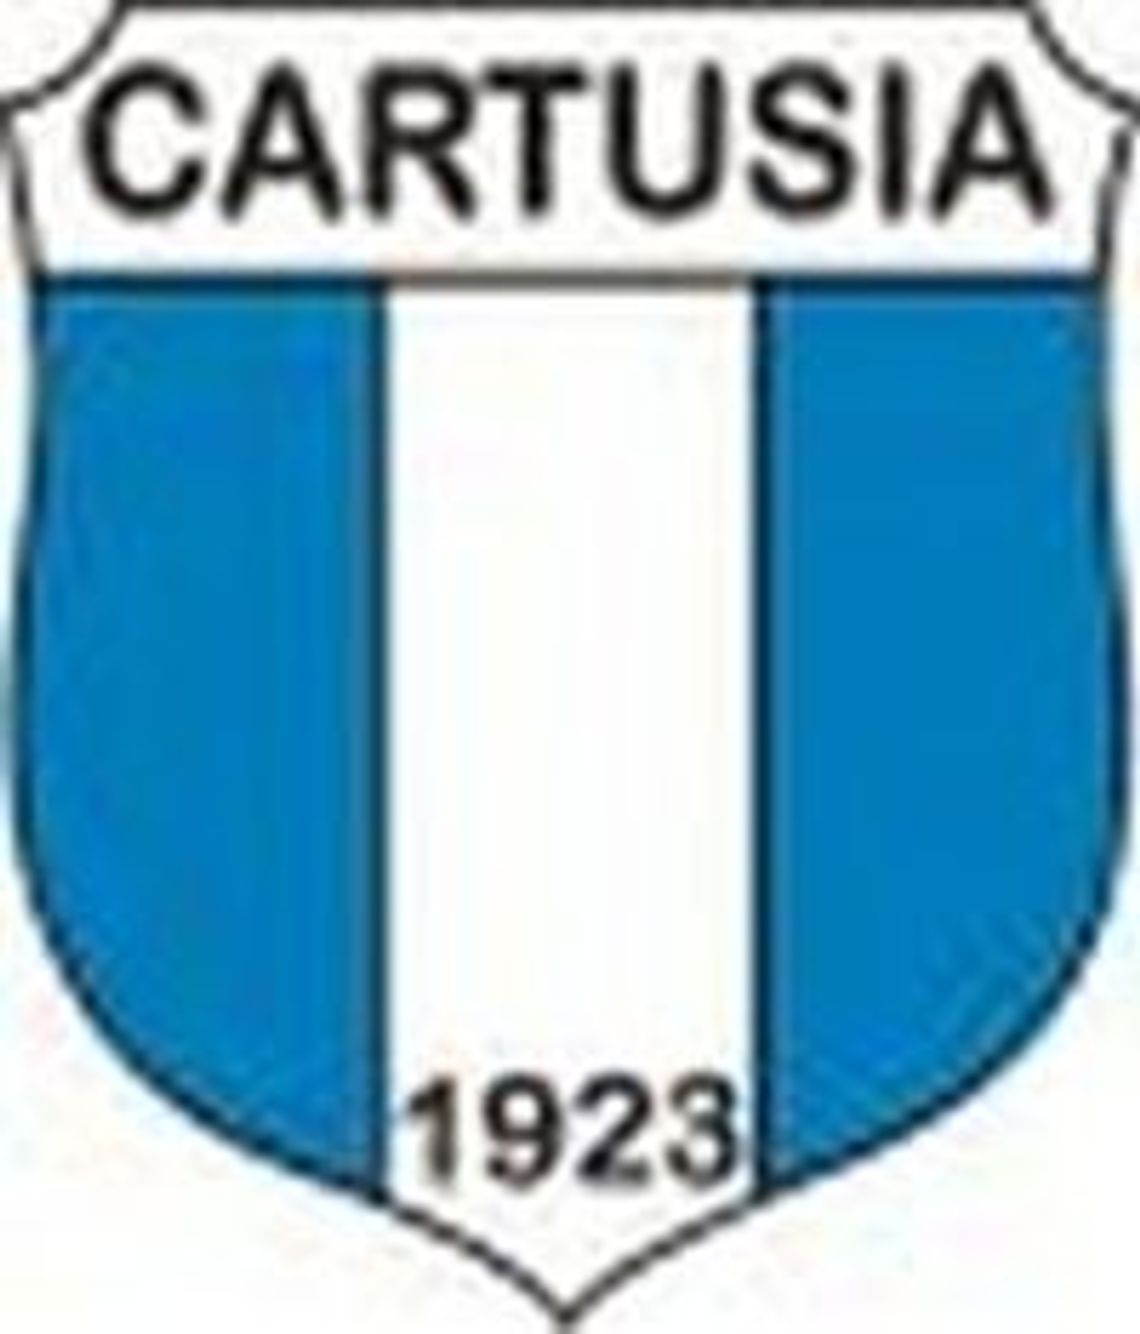 Cartusia Kartuzy - Kaszubia Kościerzyna